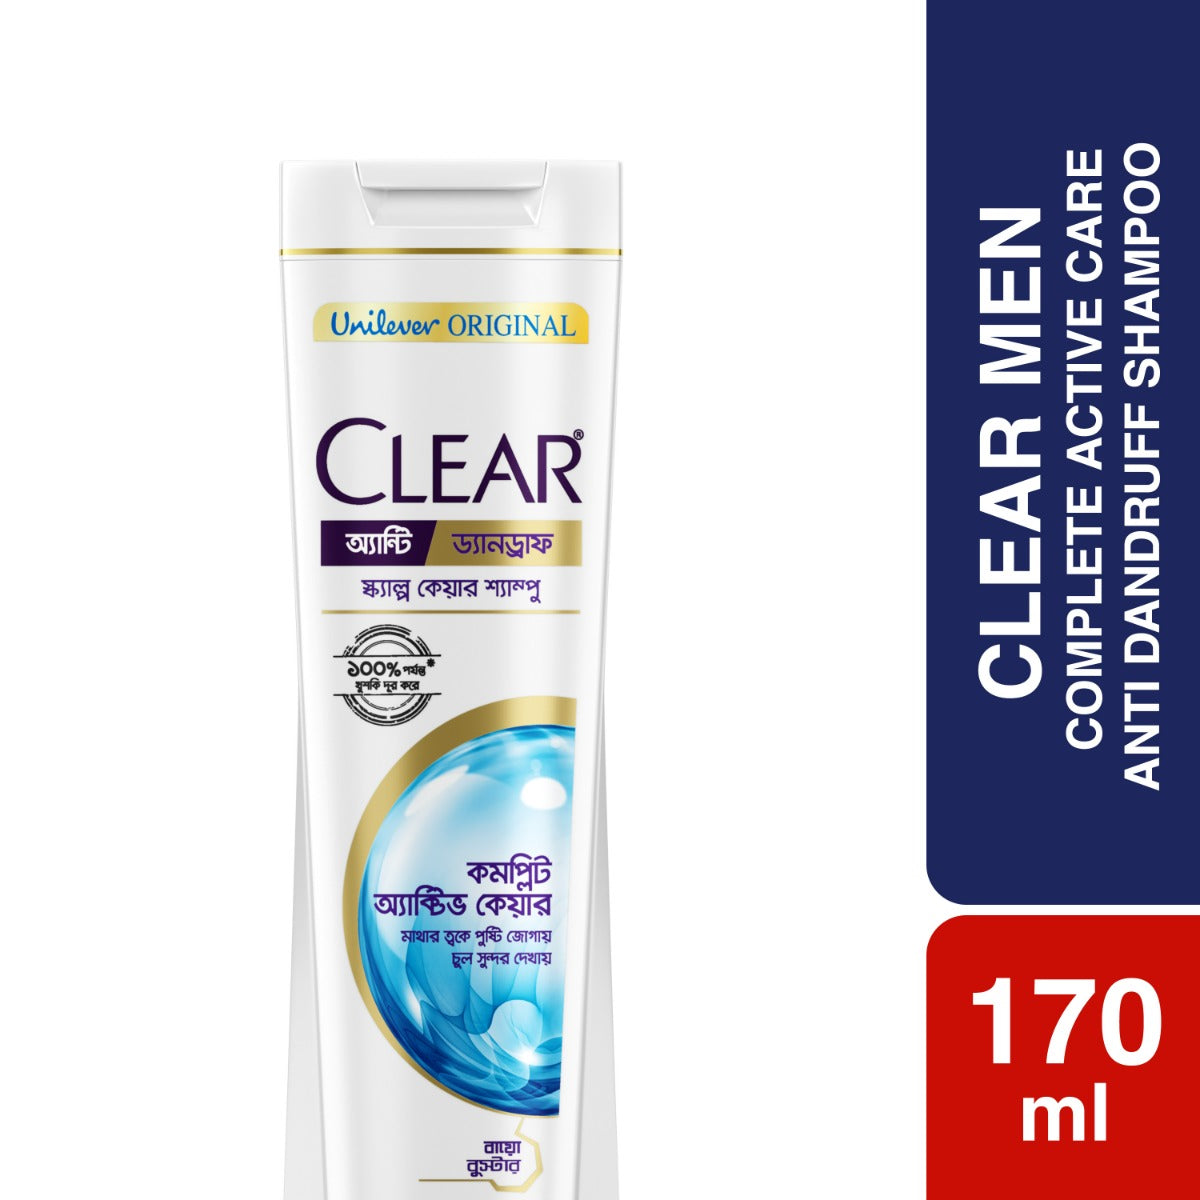 Clear Shampoo Complete Active Care Anti Dandruff